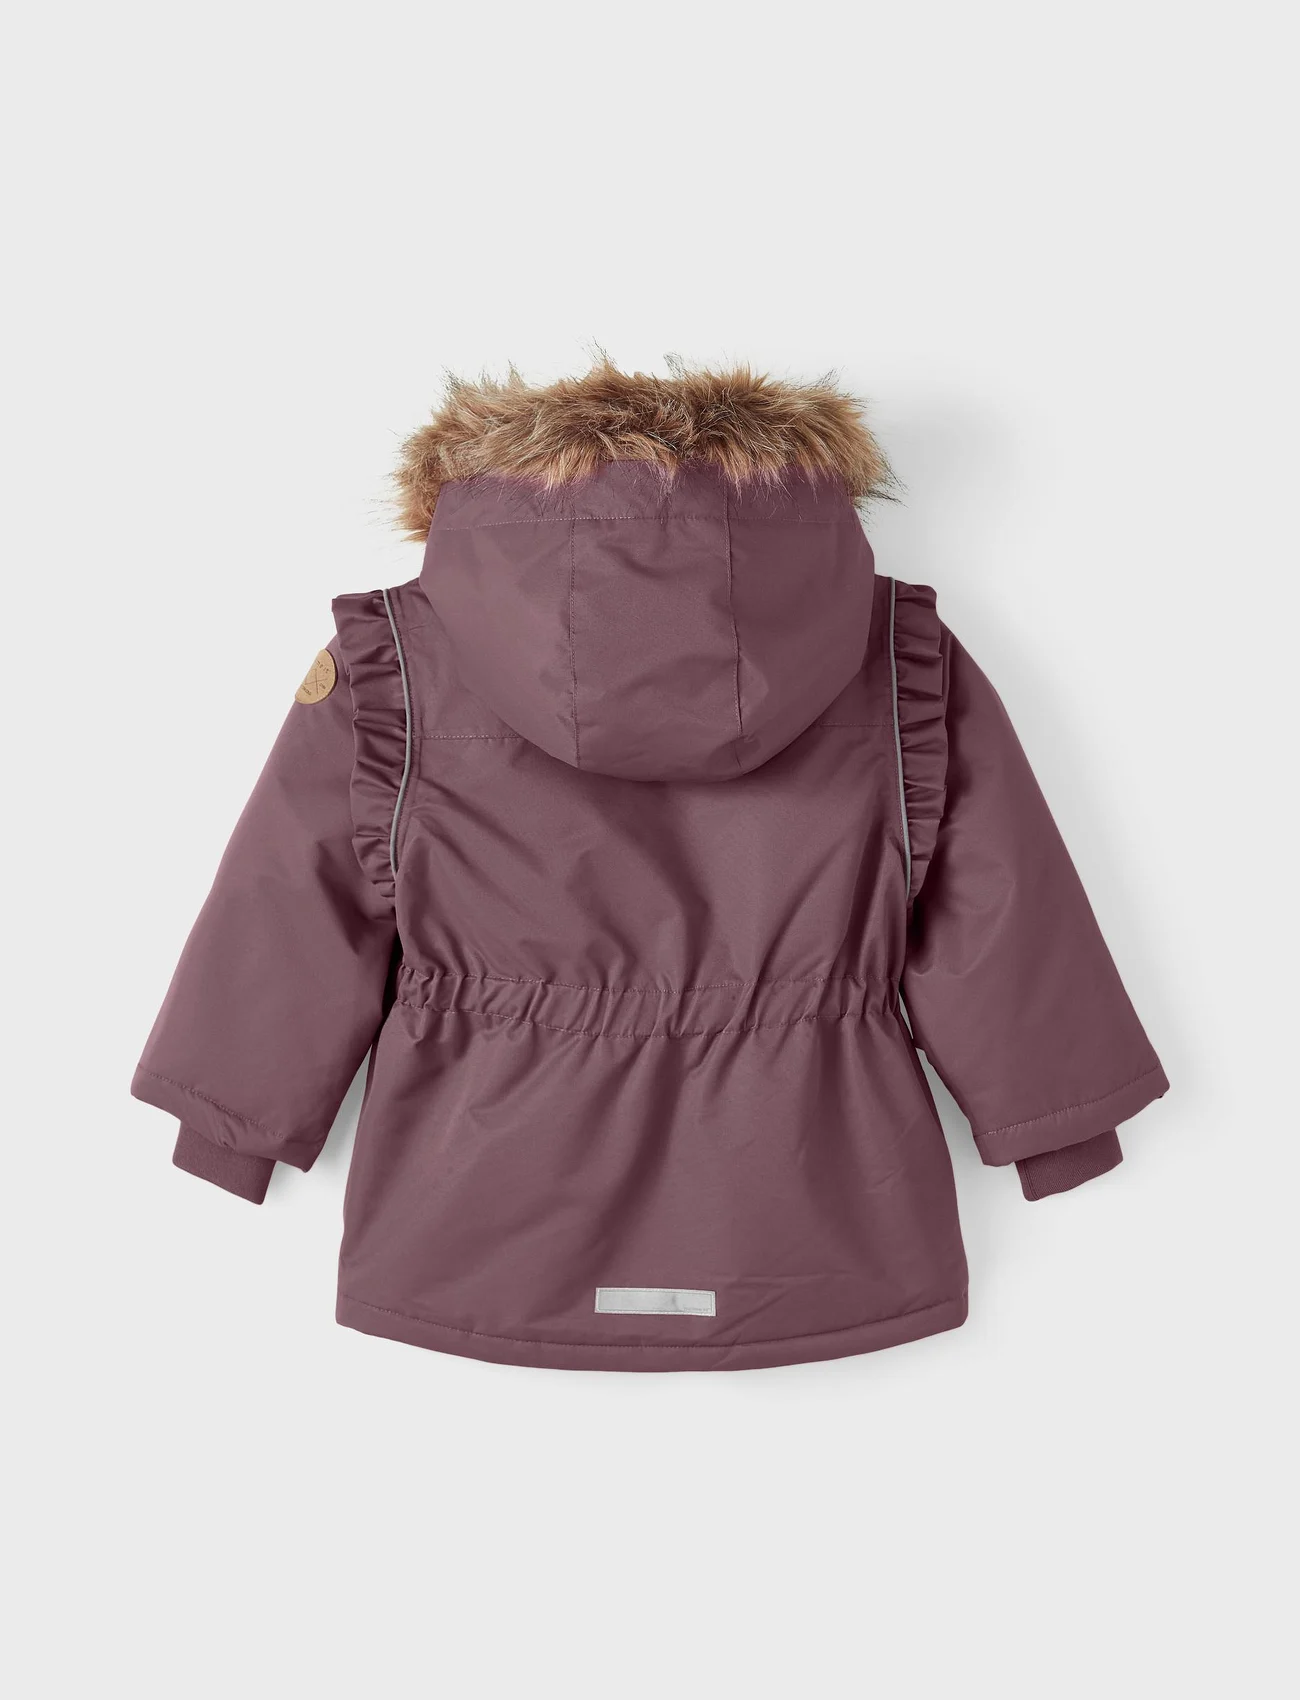 Lupilu Lupilu sports jacket Pink discount 86% KIDS FASHION Jackets Sports 